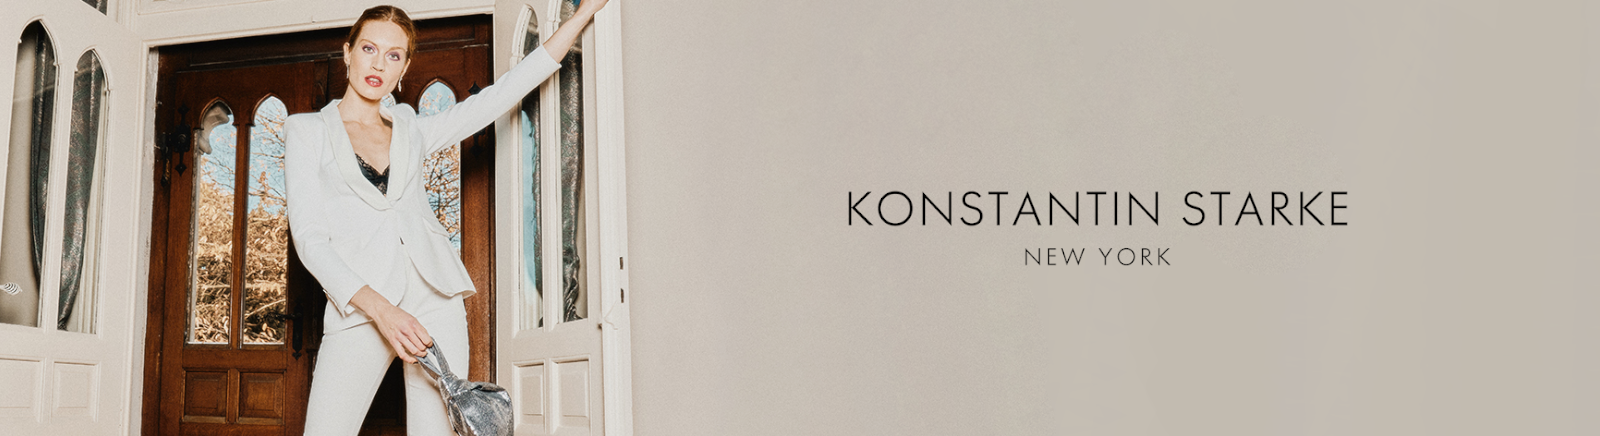 Konstantin Starke Winterschuhe für Schuhe im Online-Shop von GISY kaufen